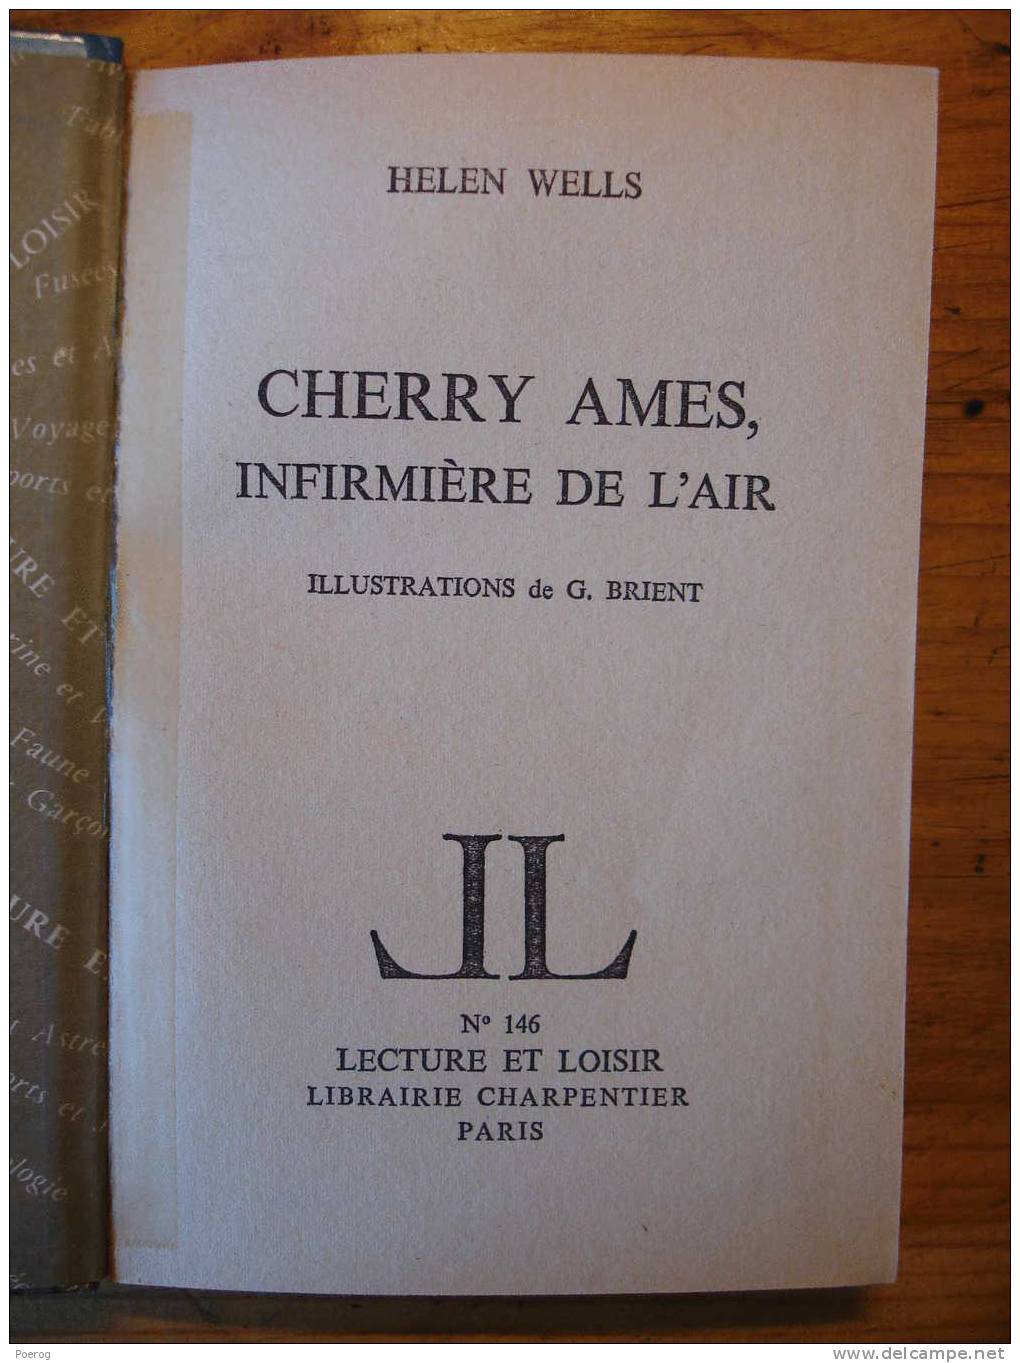 CHERRY AMES INFIRMIERE DE L'AIR - HELEN WELLS - LECTURE ET LOISIR N°146 - LIBRAIRIE CHARPENTIER PARIS - 1970 - BRIENT - Collection Lectures Und Loisirs